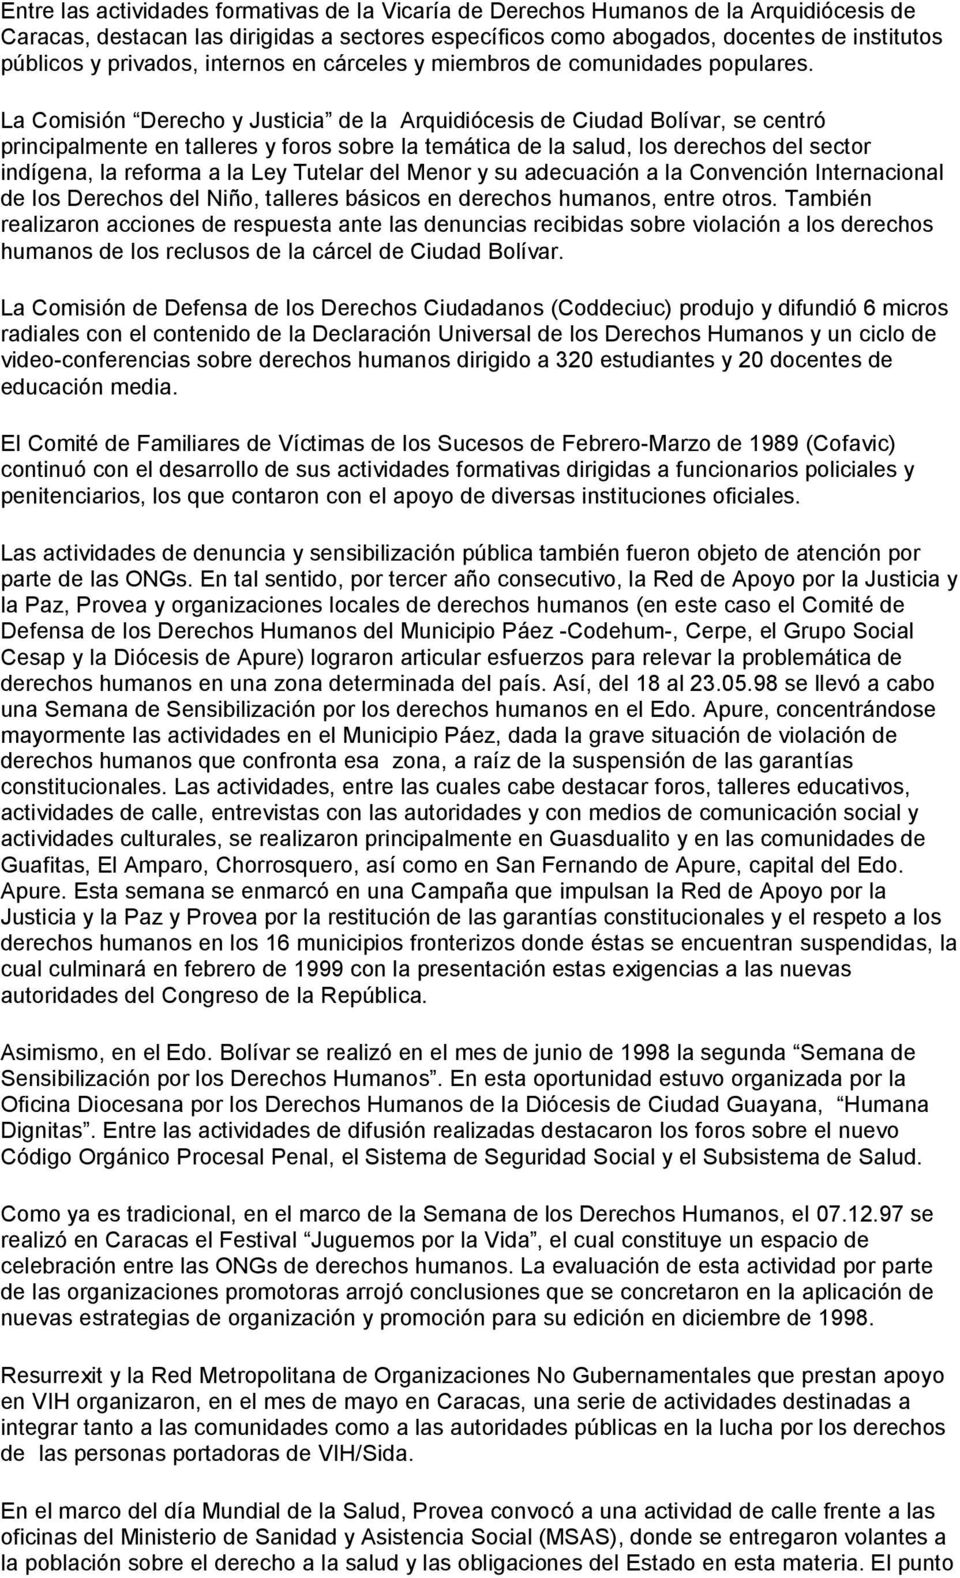 La Comisión Derecho y Justicia de la Arquidiócesis de Ciudad Bolívar, se centró principalmente en talleres y foros sobre la temática de la salud, los derechos del sector indígena, la reforma a la Ley